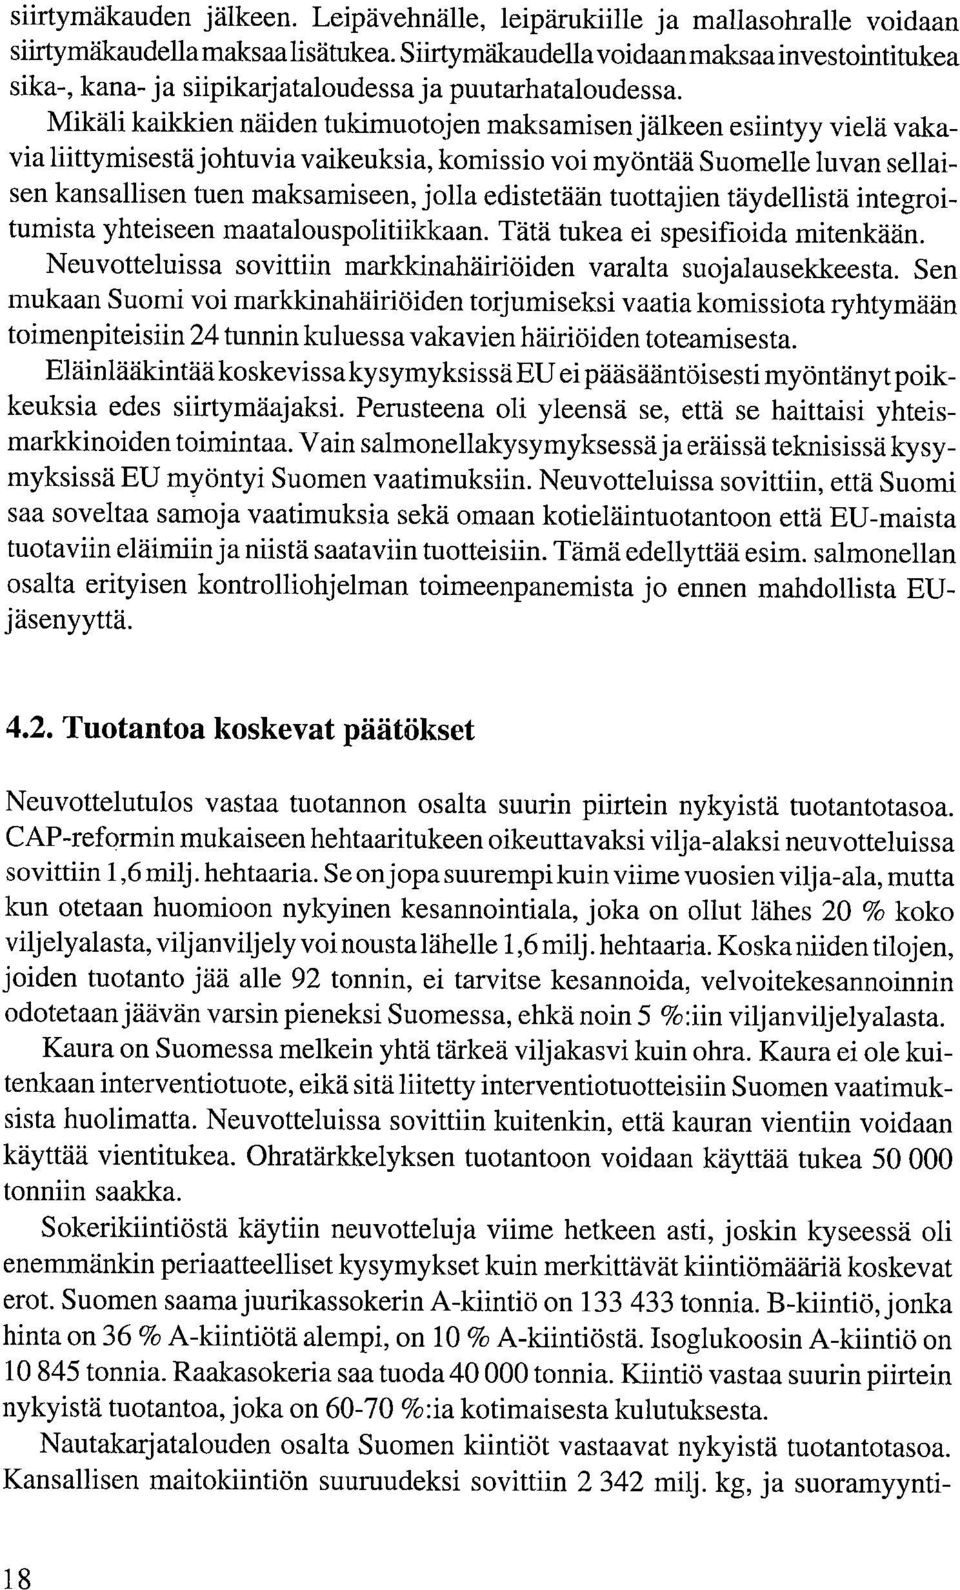 Mikäli kaikkien näiden tukimuotojen maksamisen jälkeen esiintyy vielä vakavia liittymisestä johtuvia vaikeuksia, komissio voi myöntää Suomelle luvan sellaisen kansallisen tuen maksamiseen, jolla